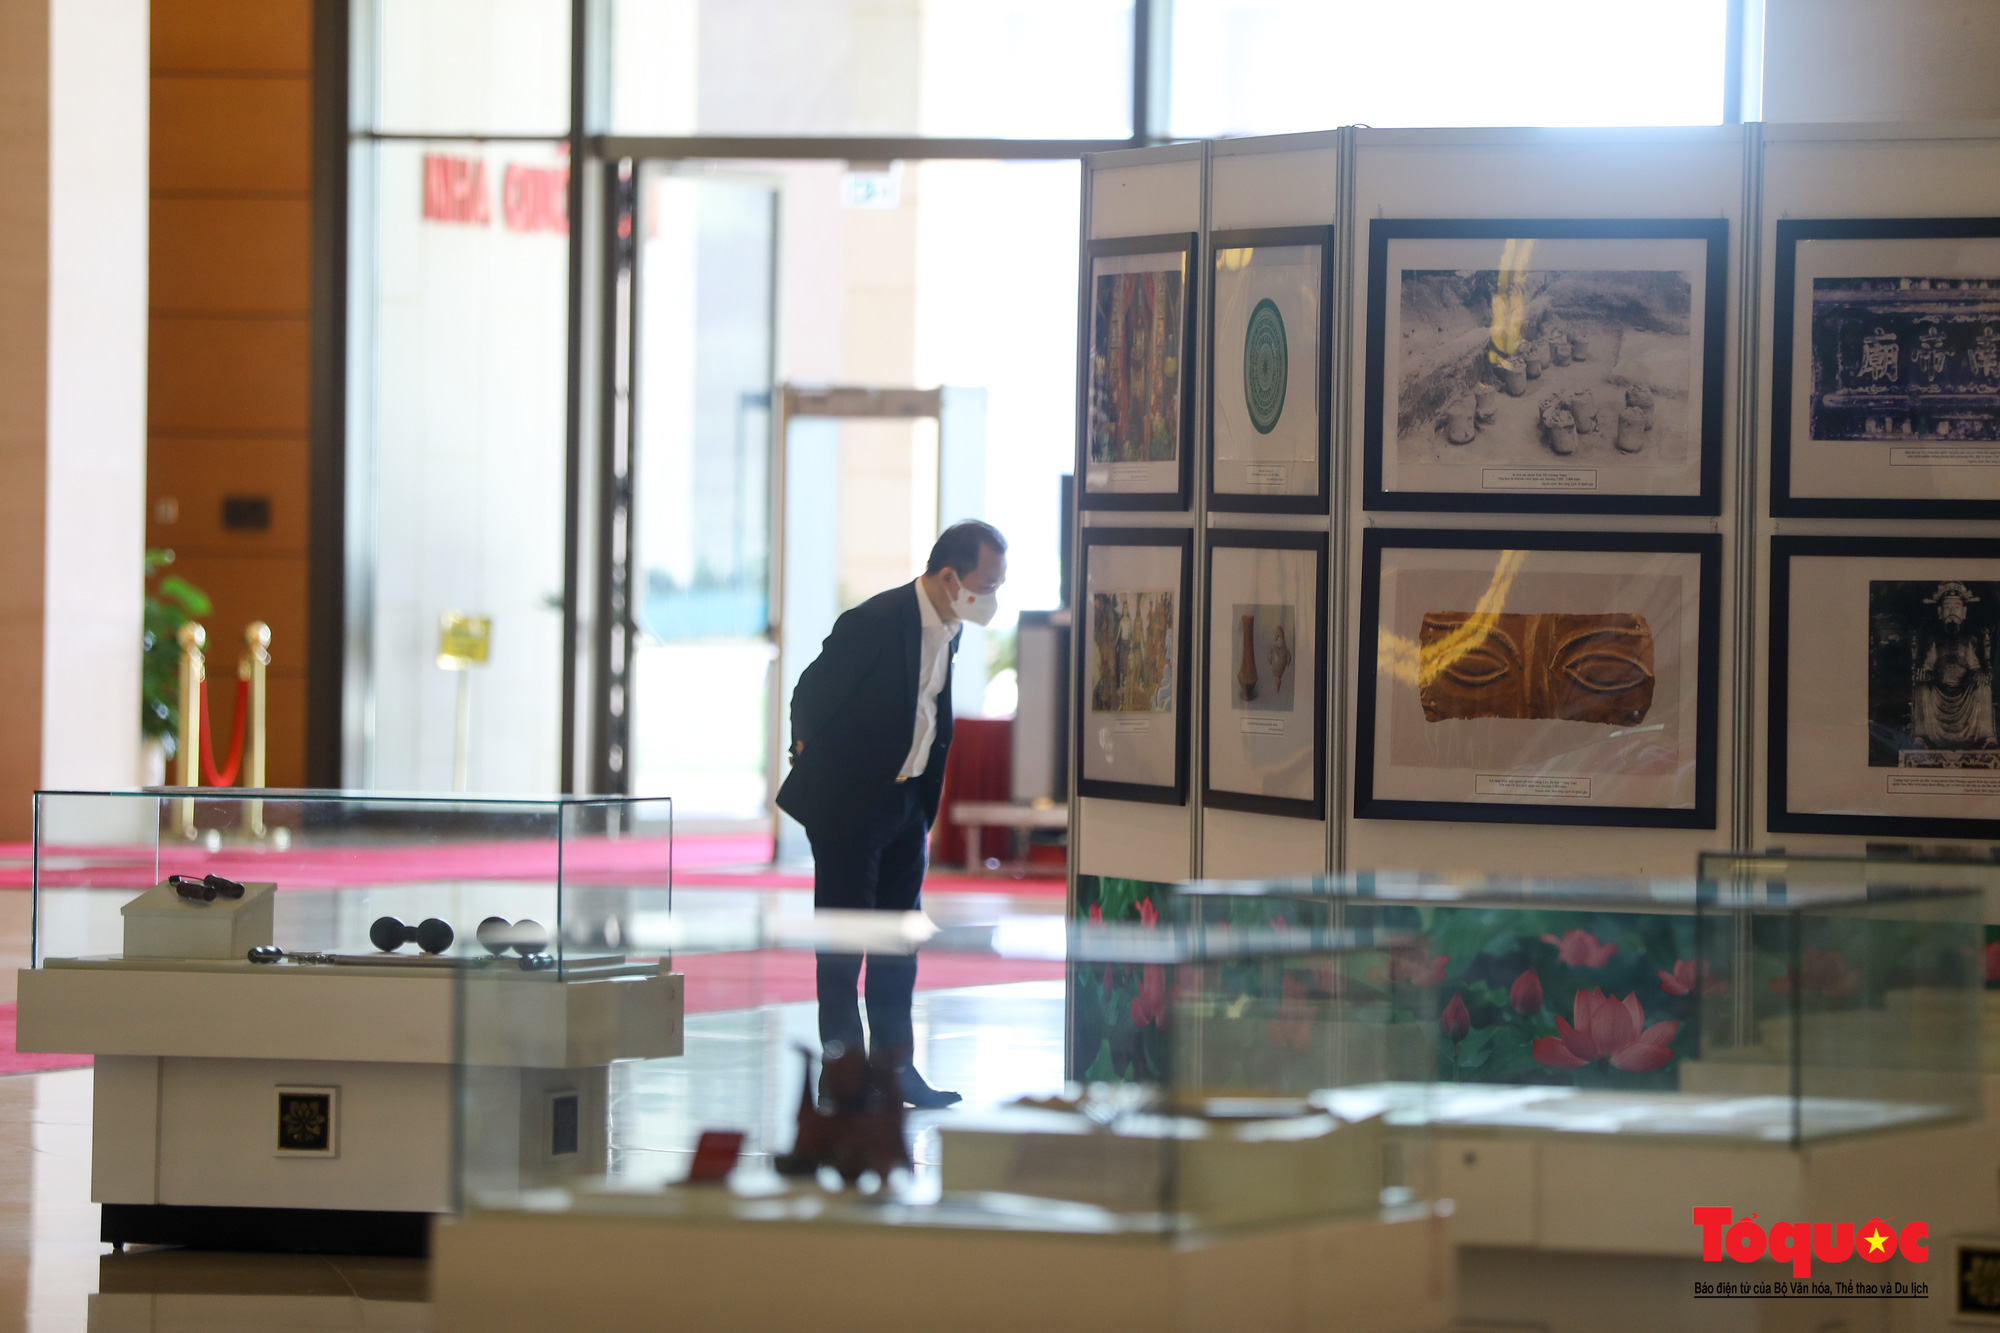 Triển lãm “Văn hóa soi đường cho quốc dân đi” trưng bày 320 tác phẩm ảnh nghệ thuật tiêu biểu - Ảnh 10.